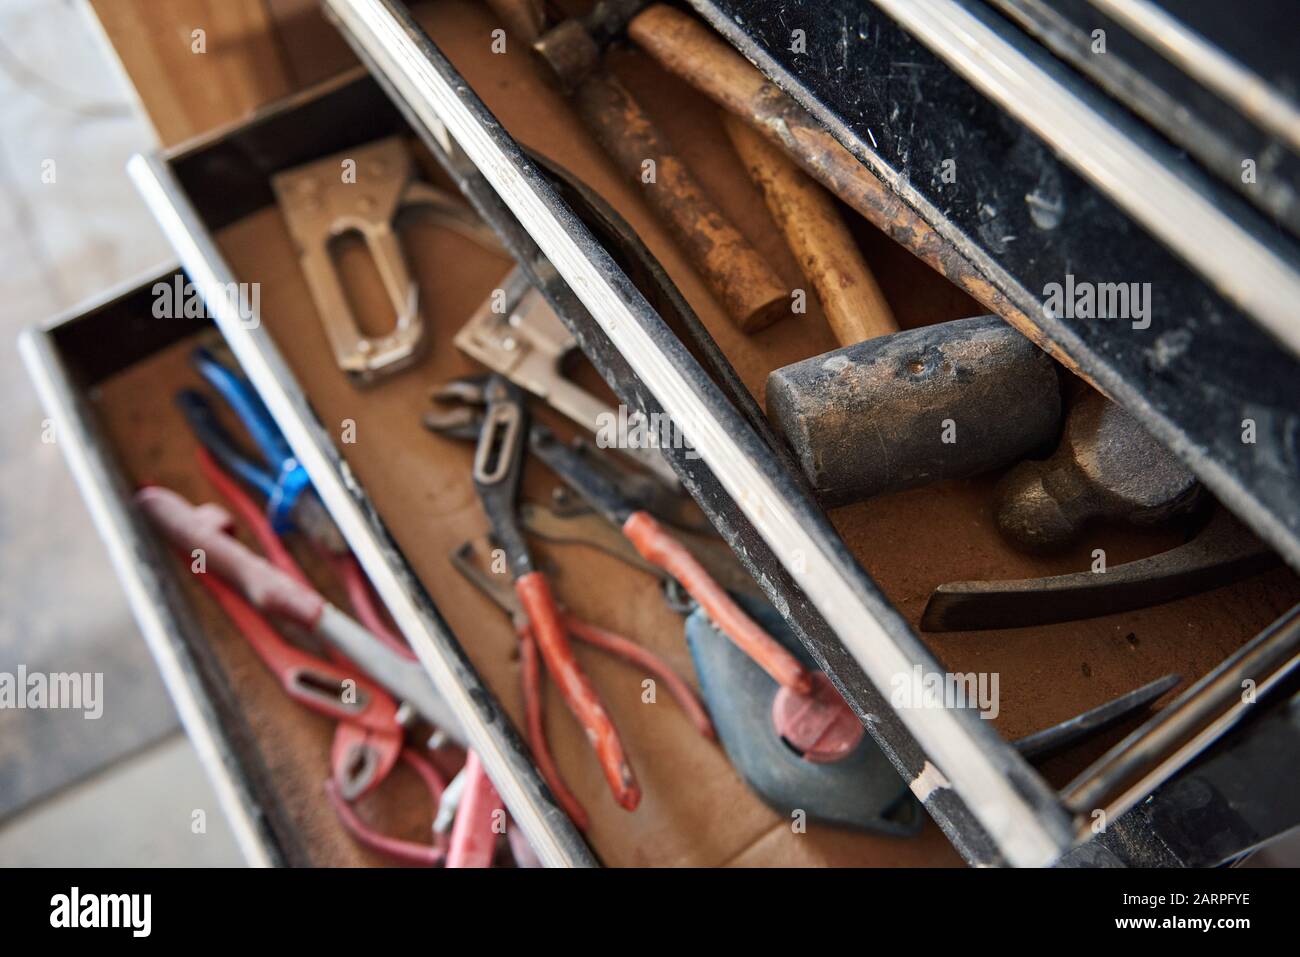 Hämmer und Werkzeuge in offenen Schubladen einer Werkbank Stockfoto